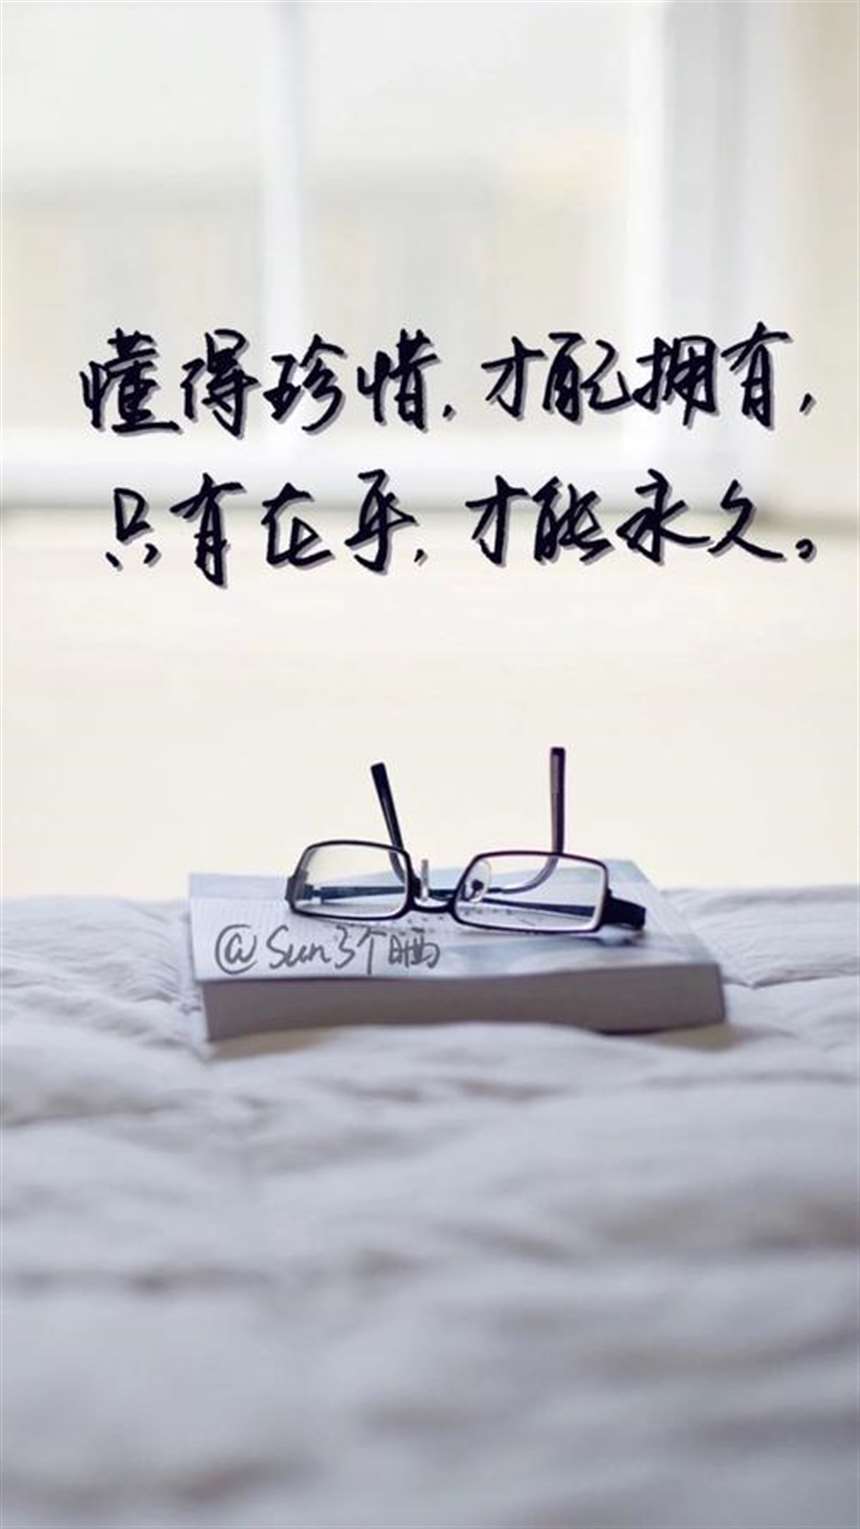 文字图片#心情语录#励志 伤感#手机壁纸#小清新文艺告白温暖情话